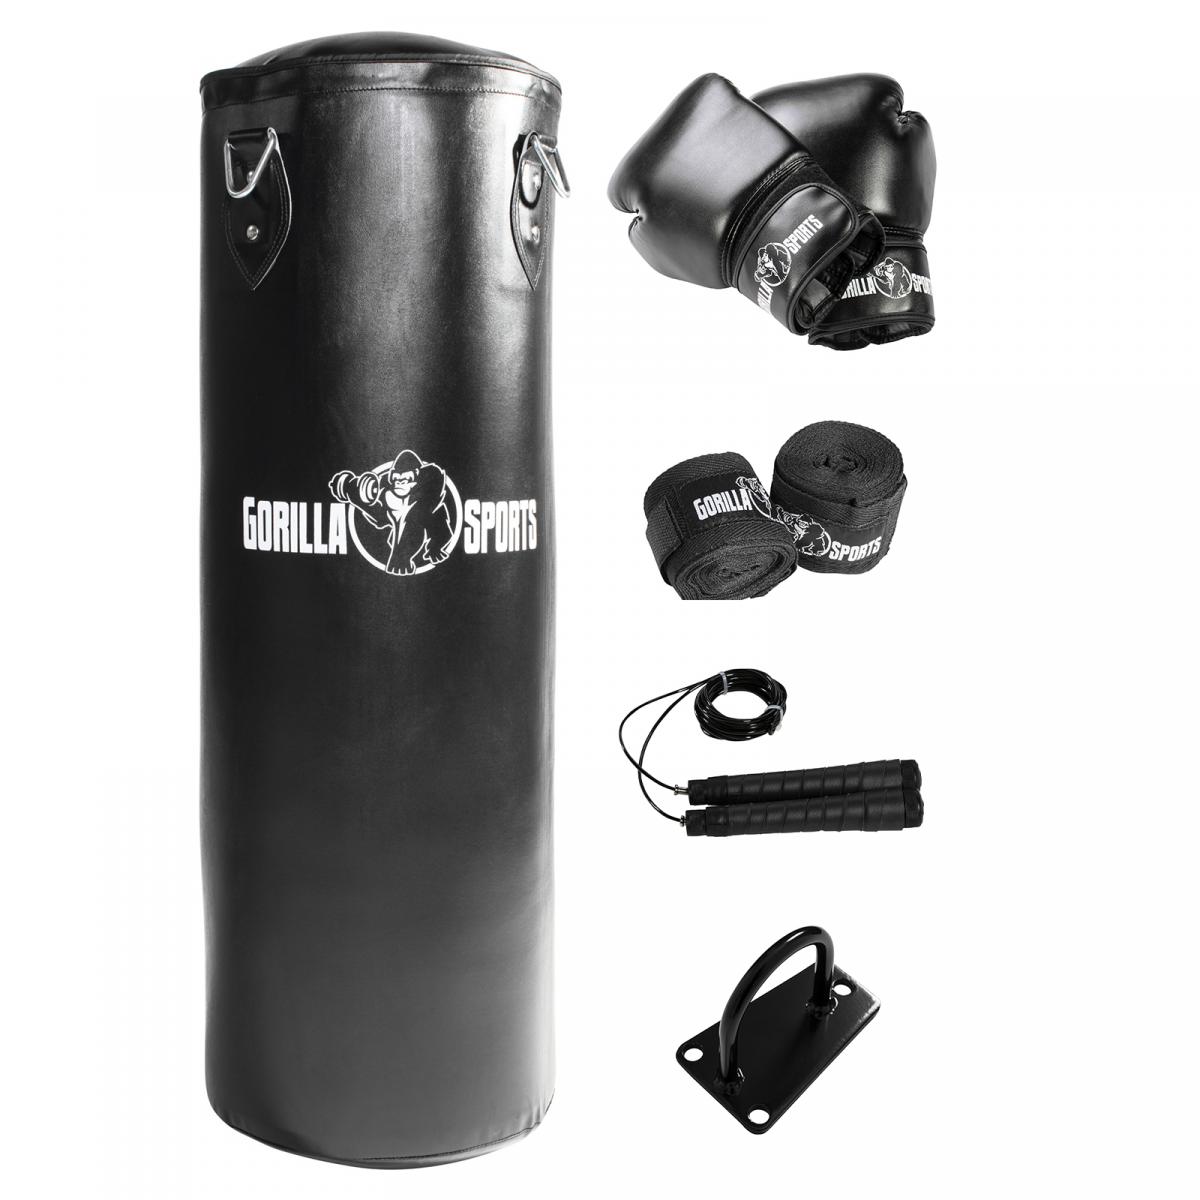 Set de boxe professionnel (sac, gants, bandes de maintien, corde Ã sauter et support d'accroche)